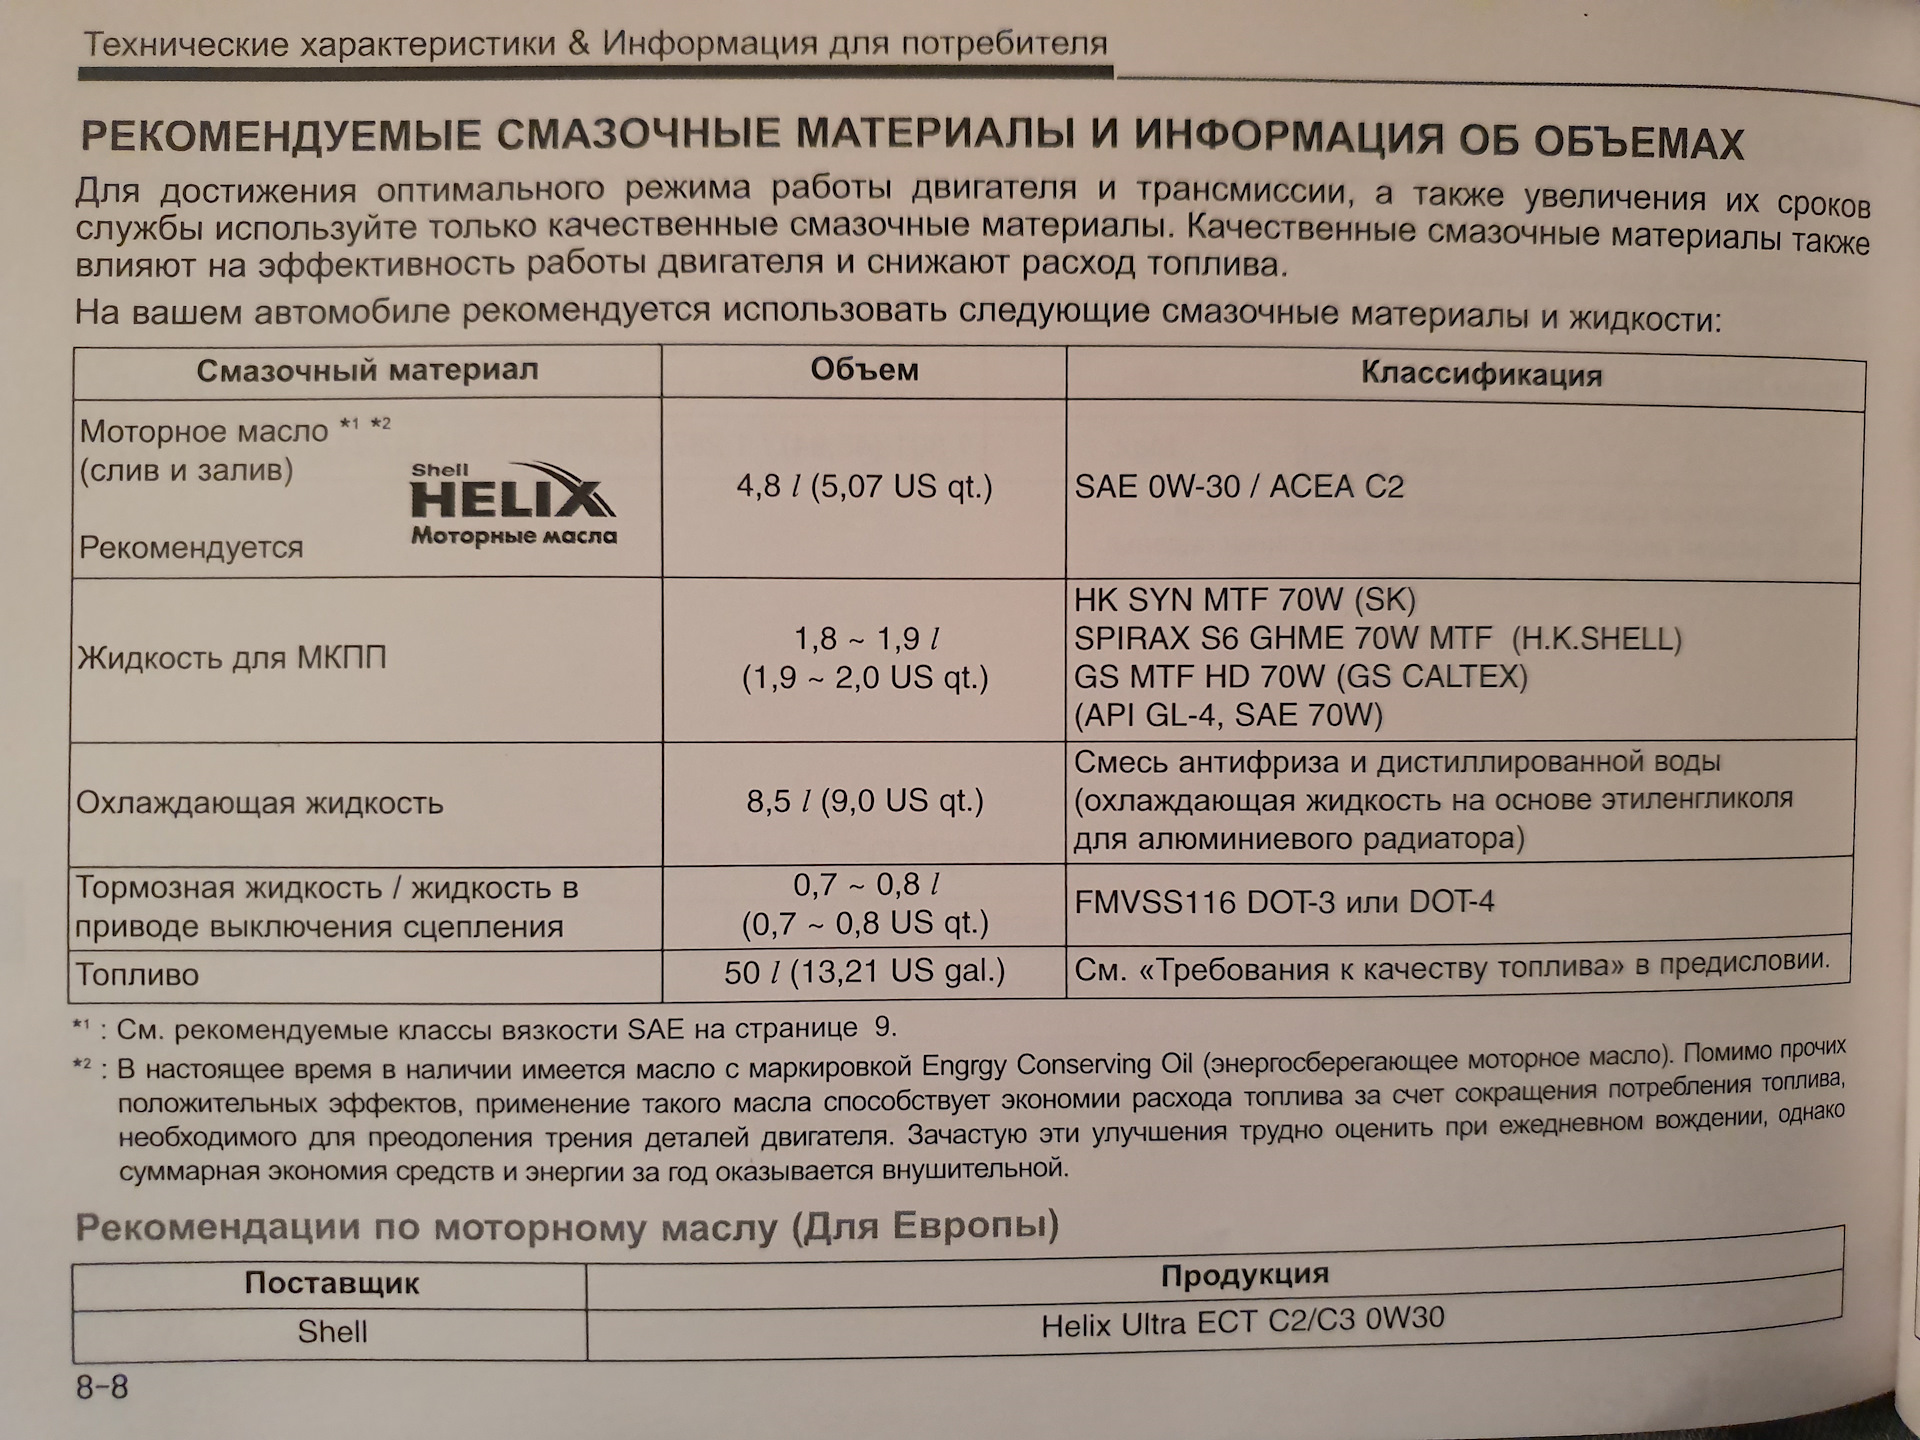 Рио расход масла. Допуски масла для Хендай Солярис 1.6. Solaris Hyundai 2015 допуски масла 1,6. Допуски моторного масла Хендай i30 1,6. Solaris 1.6 масло в двигатель допуски.